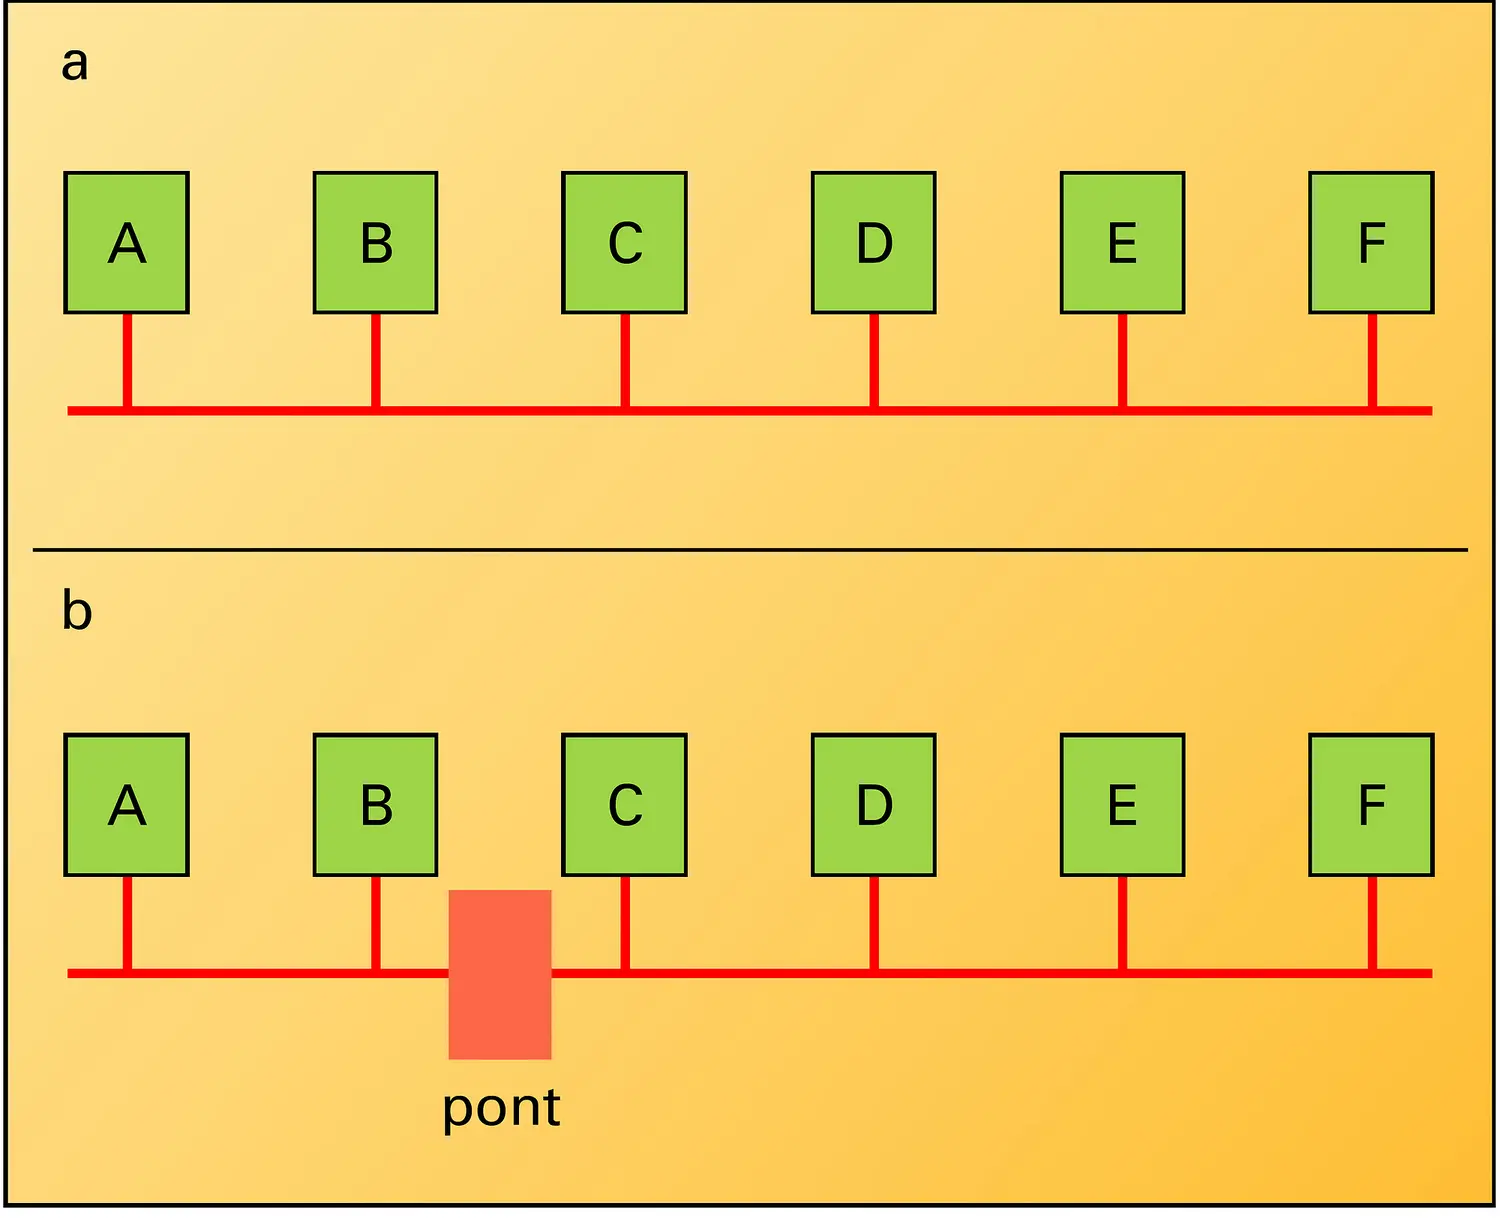 Réseaux informatiques : pont segmentant un réseau